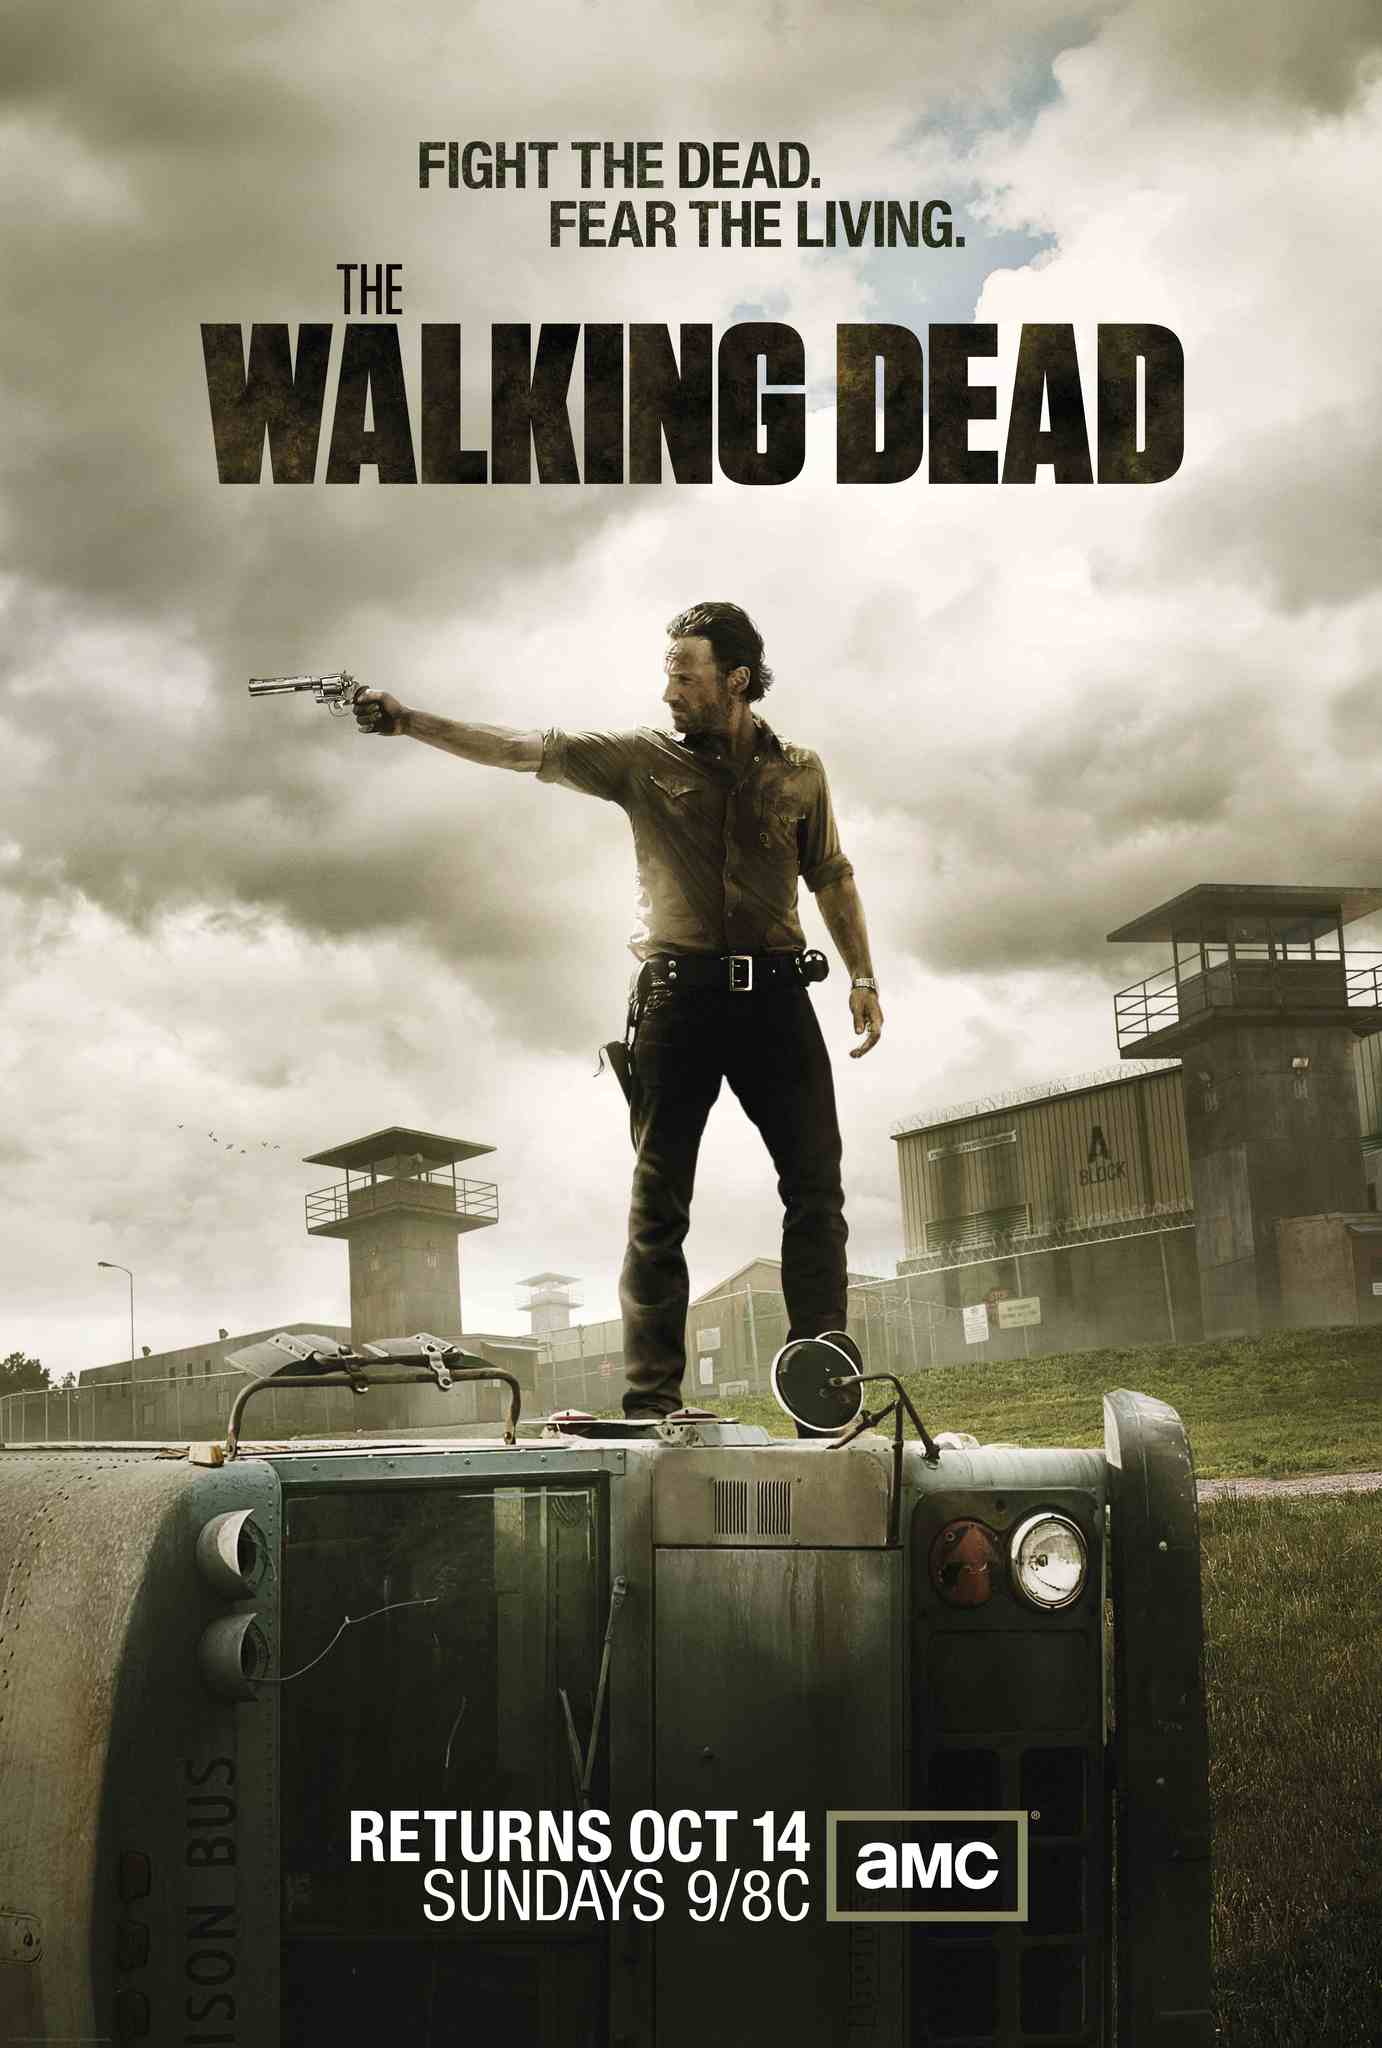 The Walking Dead - Horror Webseries